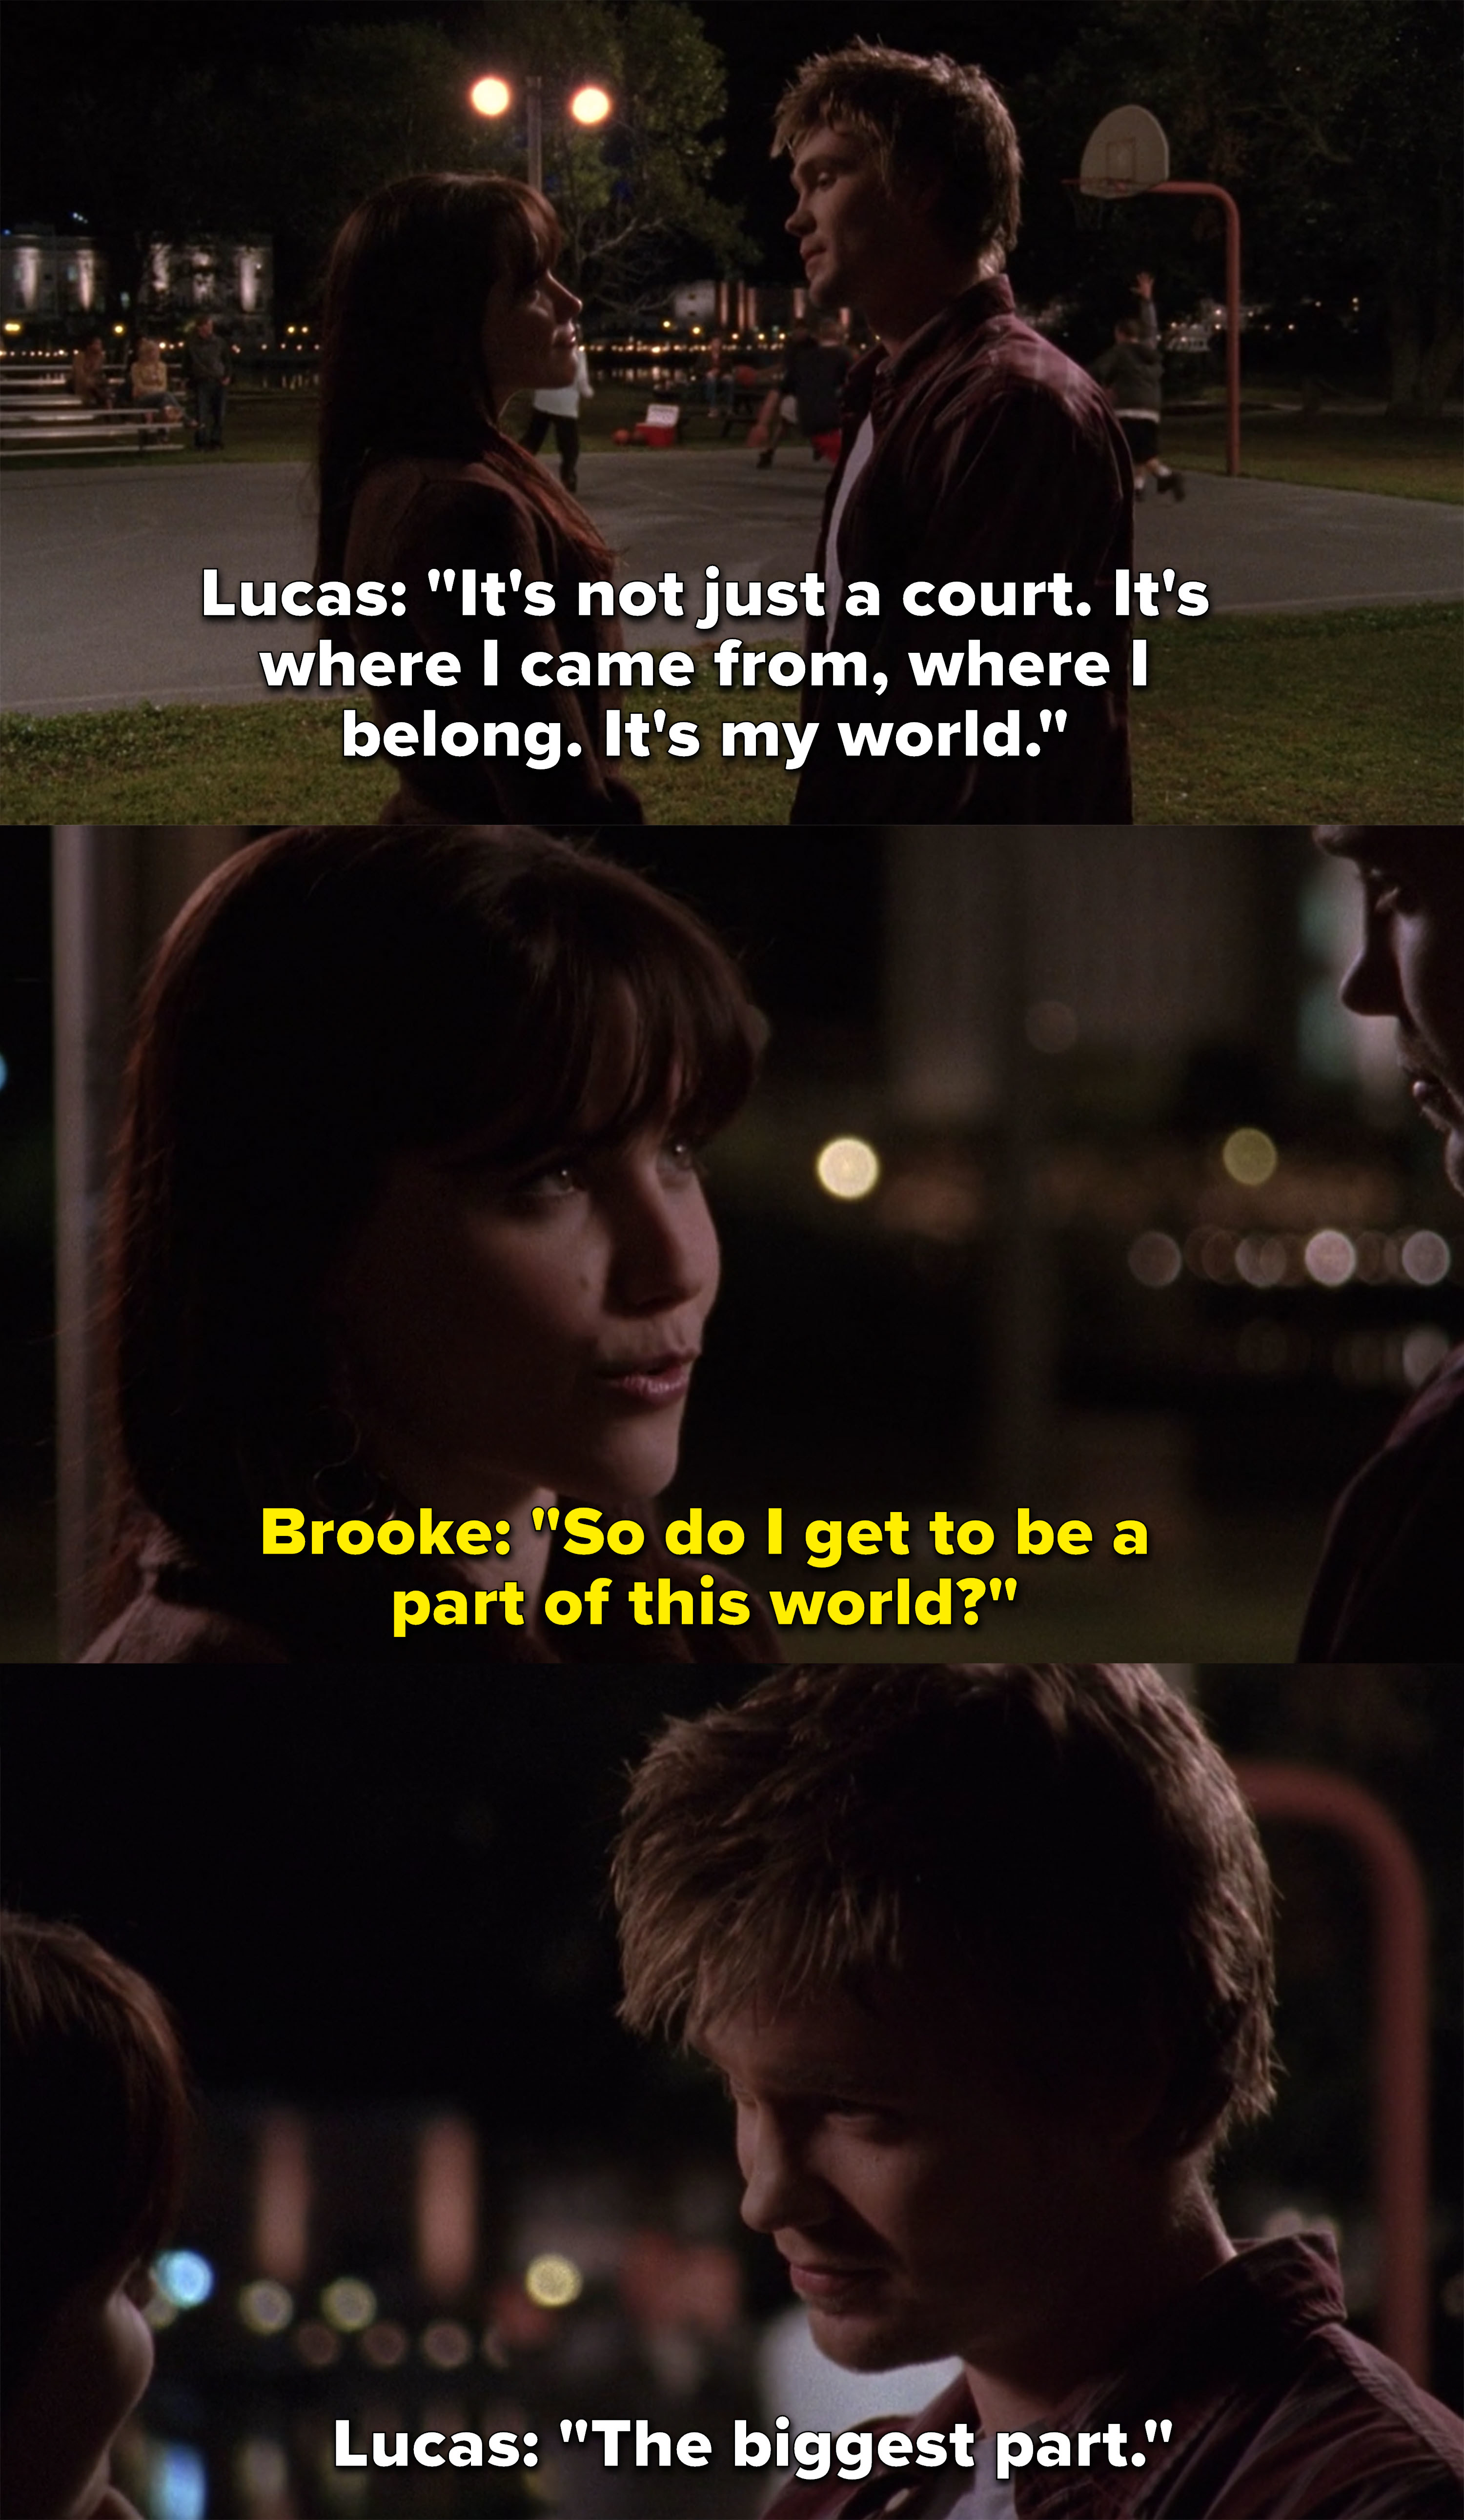 卢卡斯说,法院是他的世界,布鲁克问她是否可以成为这个世界的一部分,和卢卡斯回答说:“最大的part"